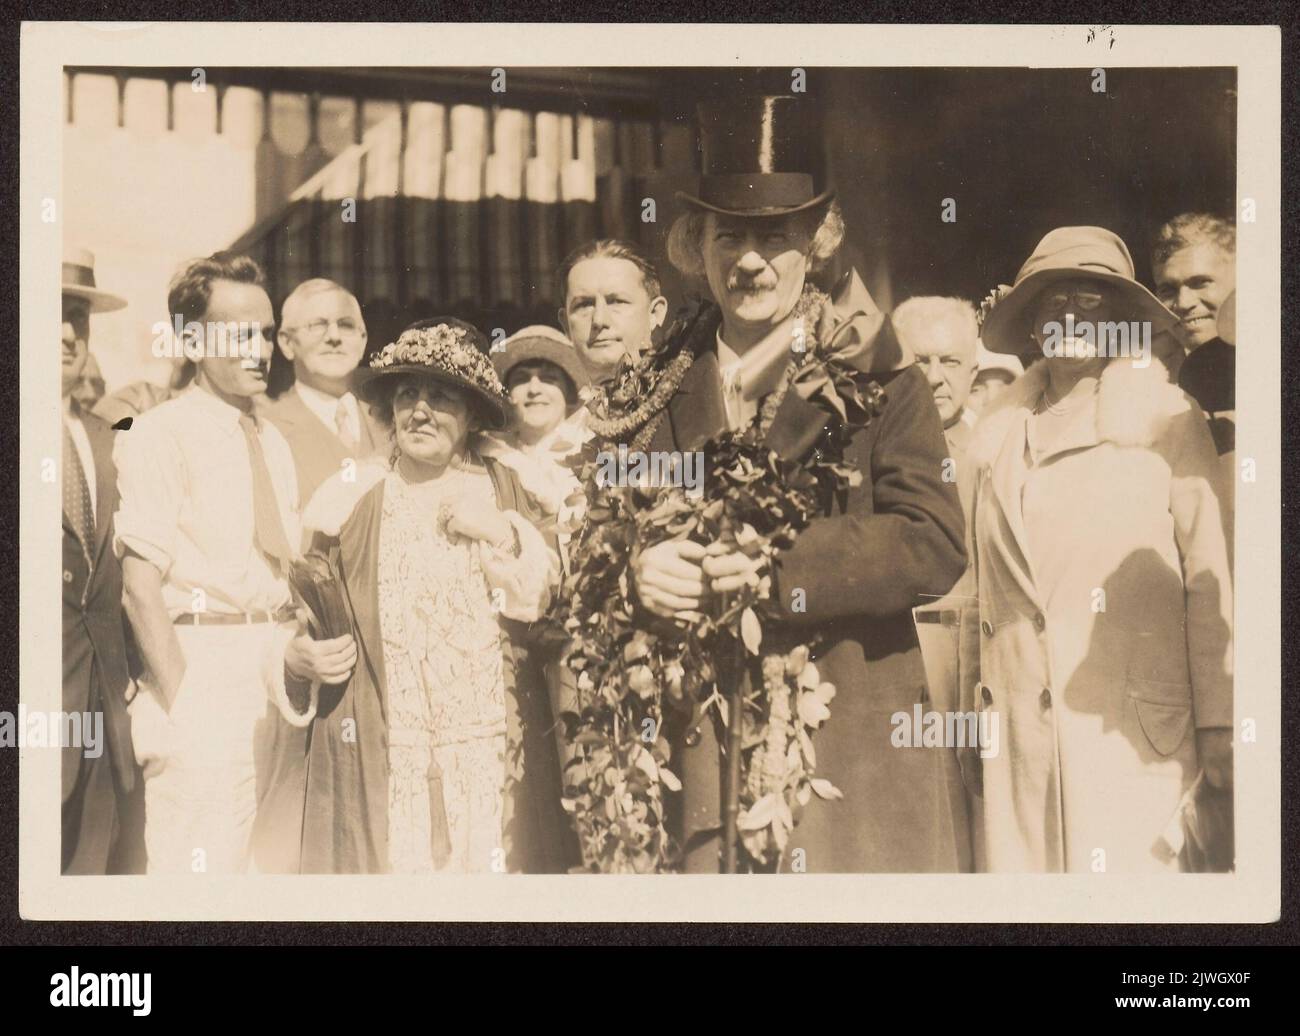 Ignacy Jan (1860-1941) et Helena (1856-1934) Paderewski à une gare (à Paso Robles ?). Inconnu, photographe Banque D'Images